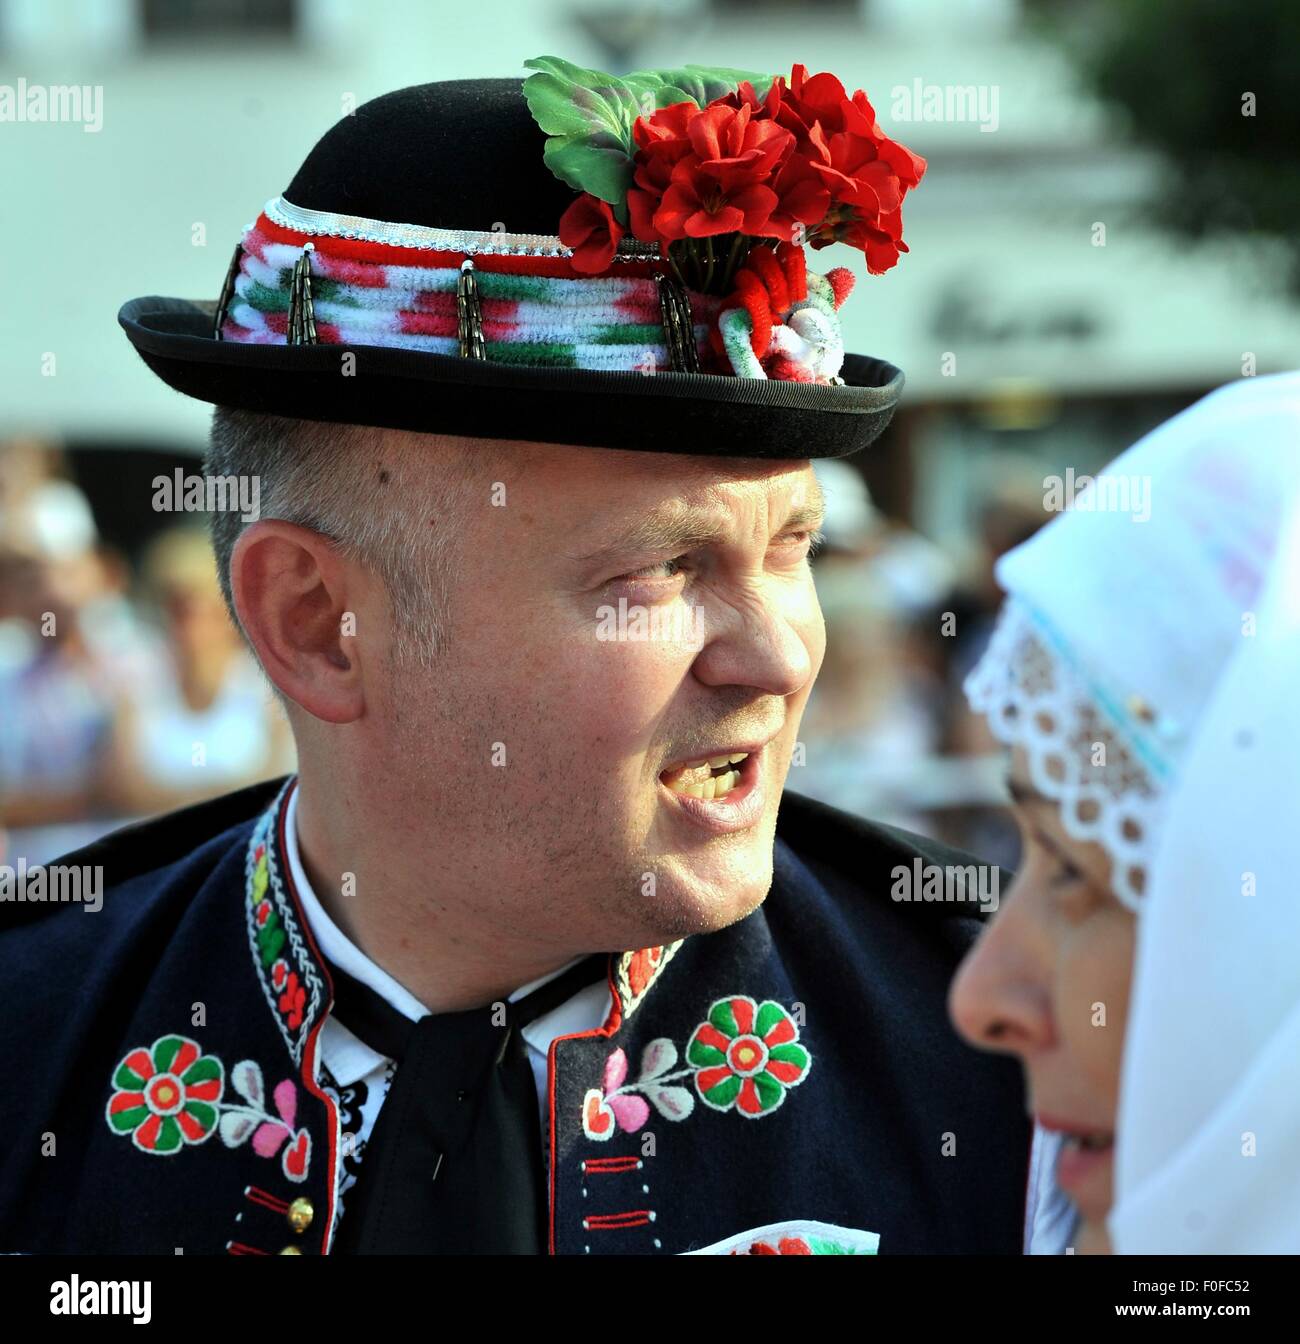 Kyjov, Repubblica Ceca. 14 Ago, 2015. I membri di una varietà di gruppi  folk e gli amanti della tradizione ha preso parte ad un festival  internazionale del folklore intitolato Slovacky nella Rok